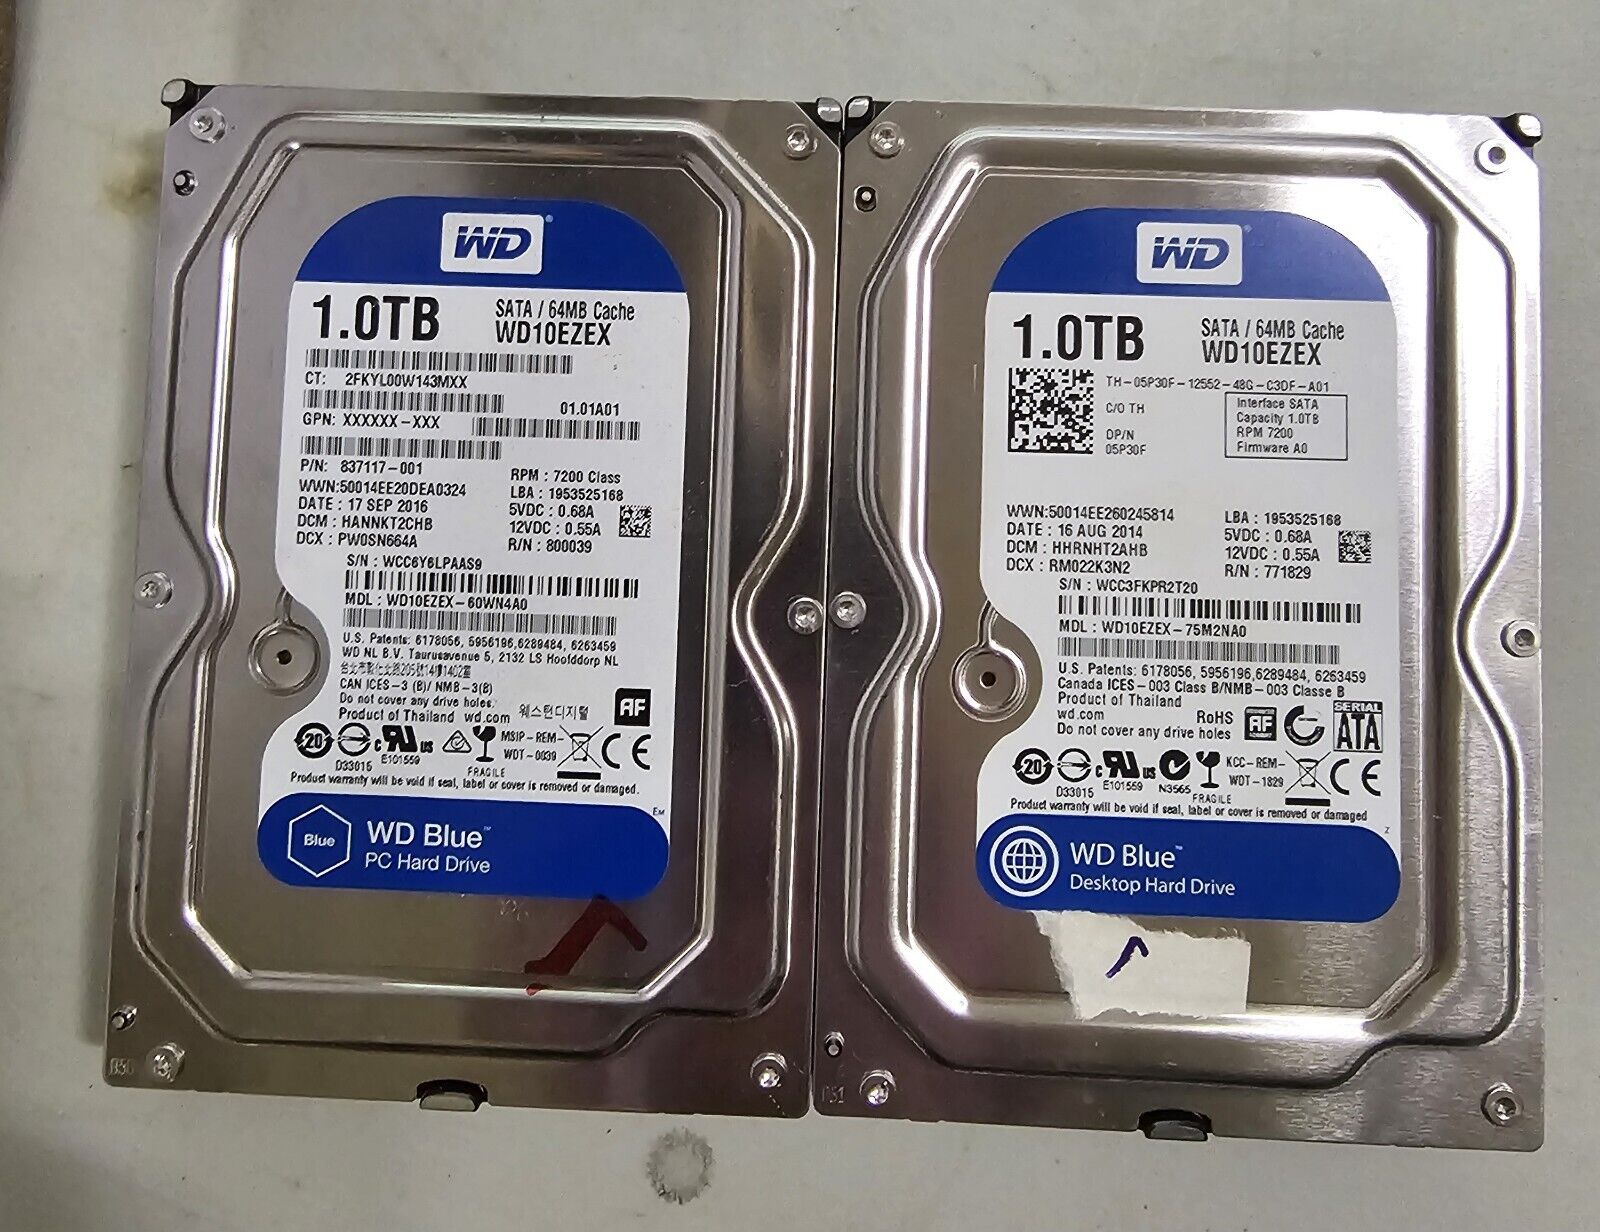 Lot of Two (2) Western Digital Blue 1.0TB Internal Desktop Hard Drive (WD10EZEX)